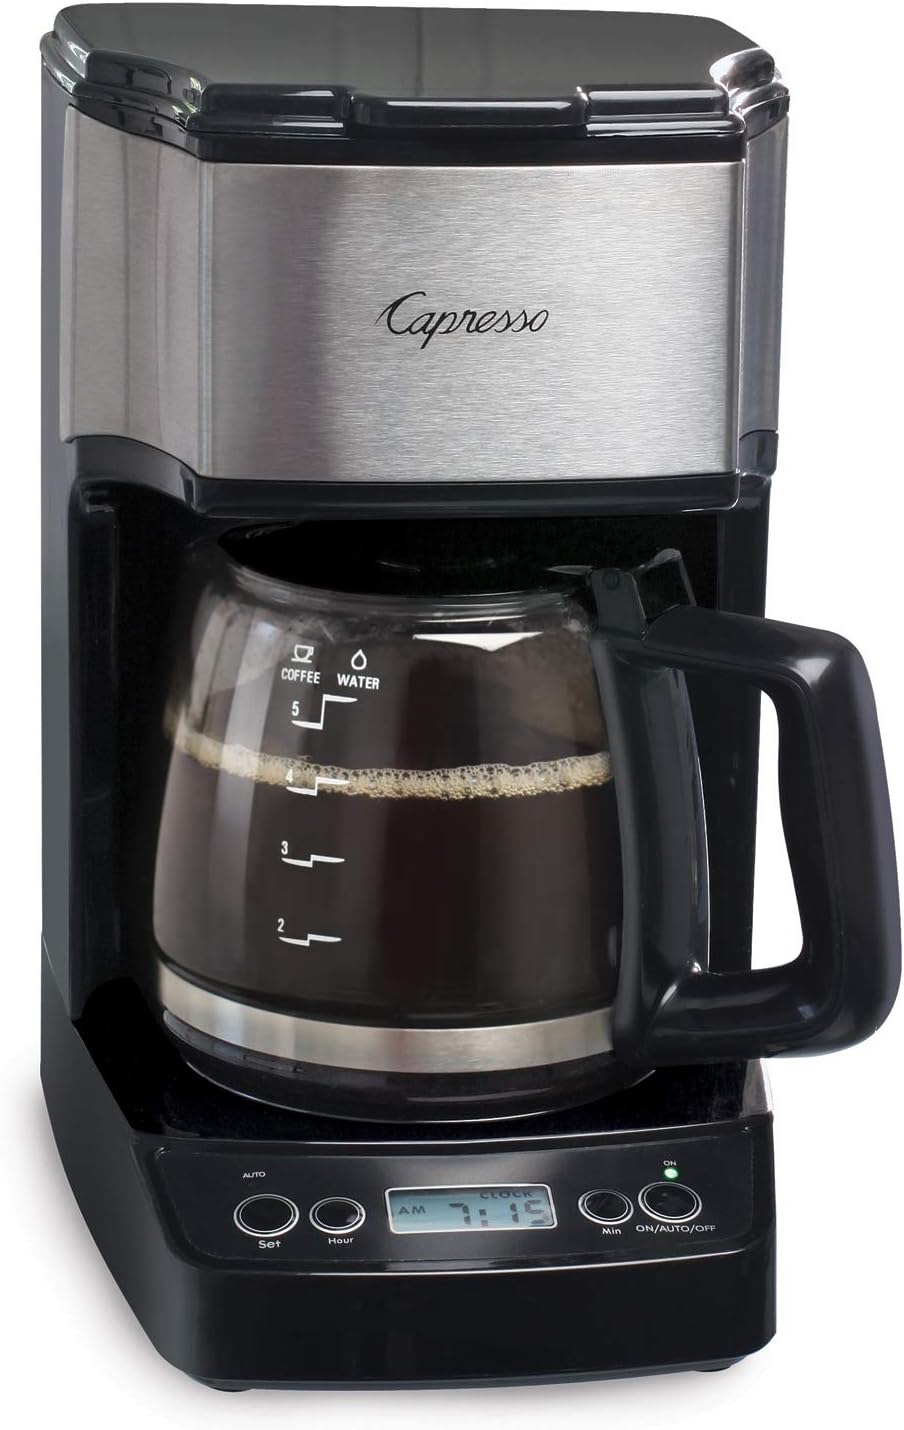 Capresso 5-Cup Mini Drip Coffee Maker Review